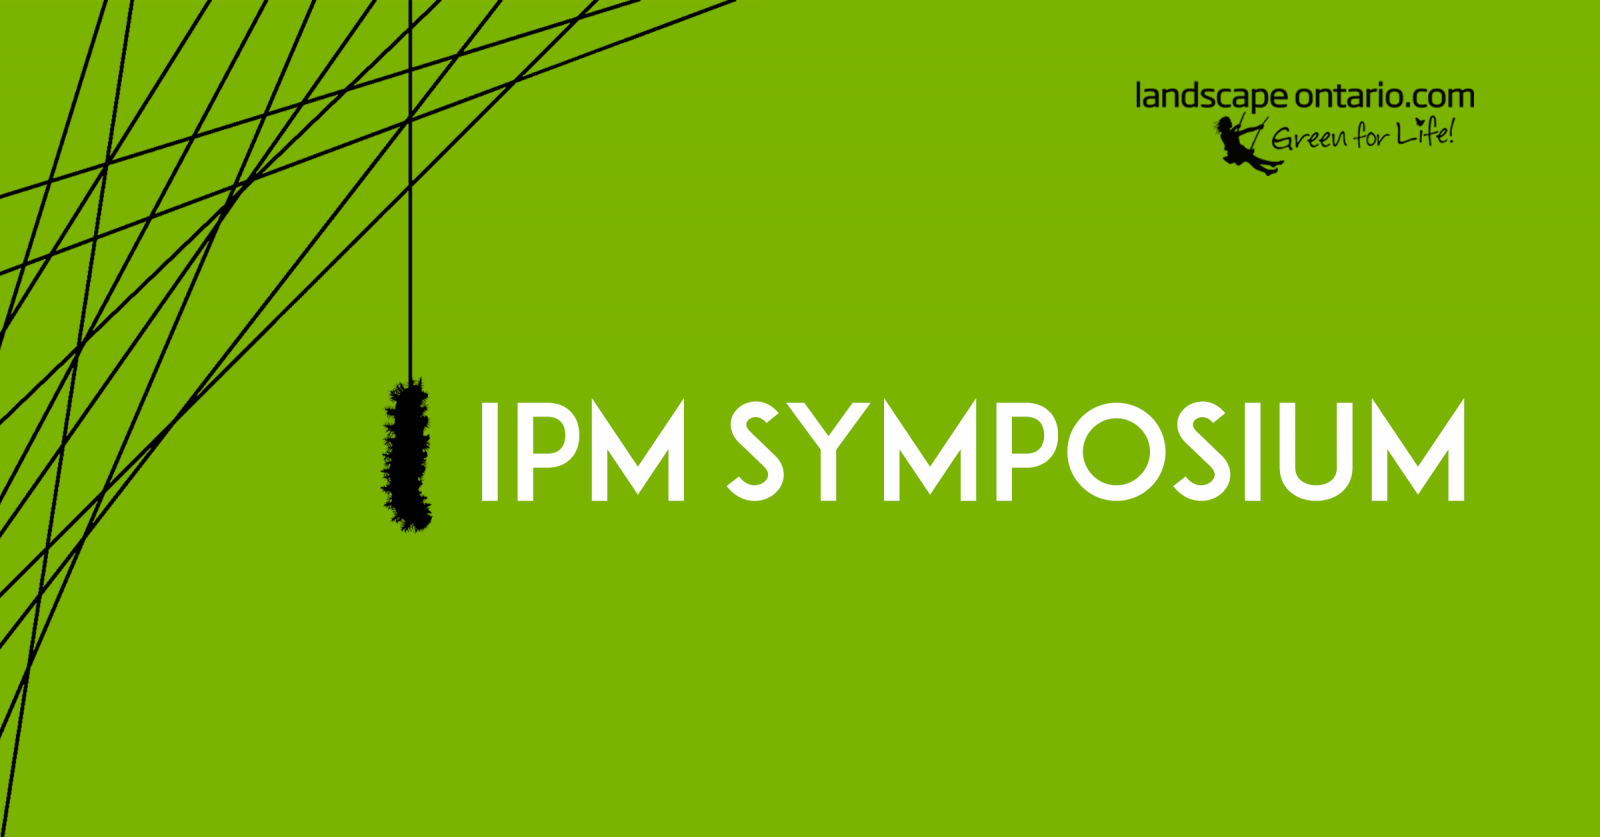 IPM Symposium 2022